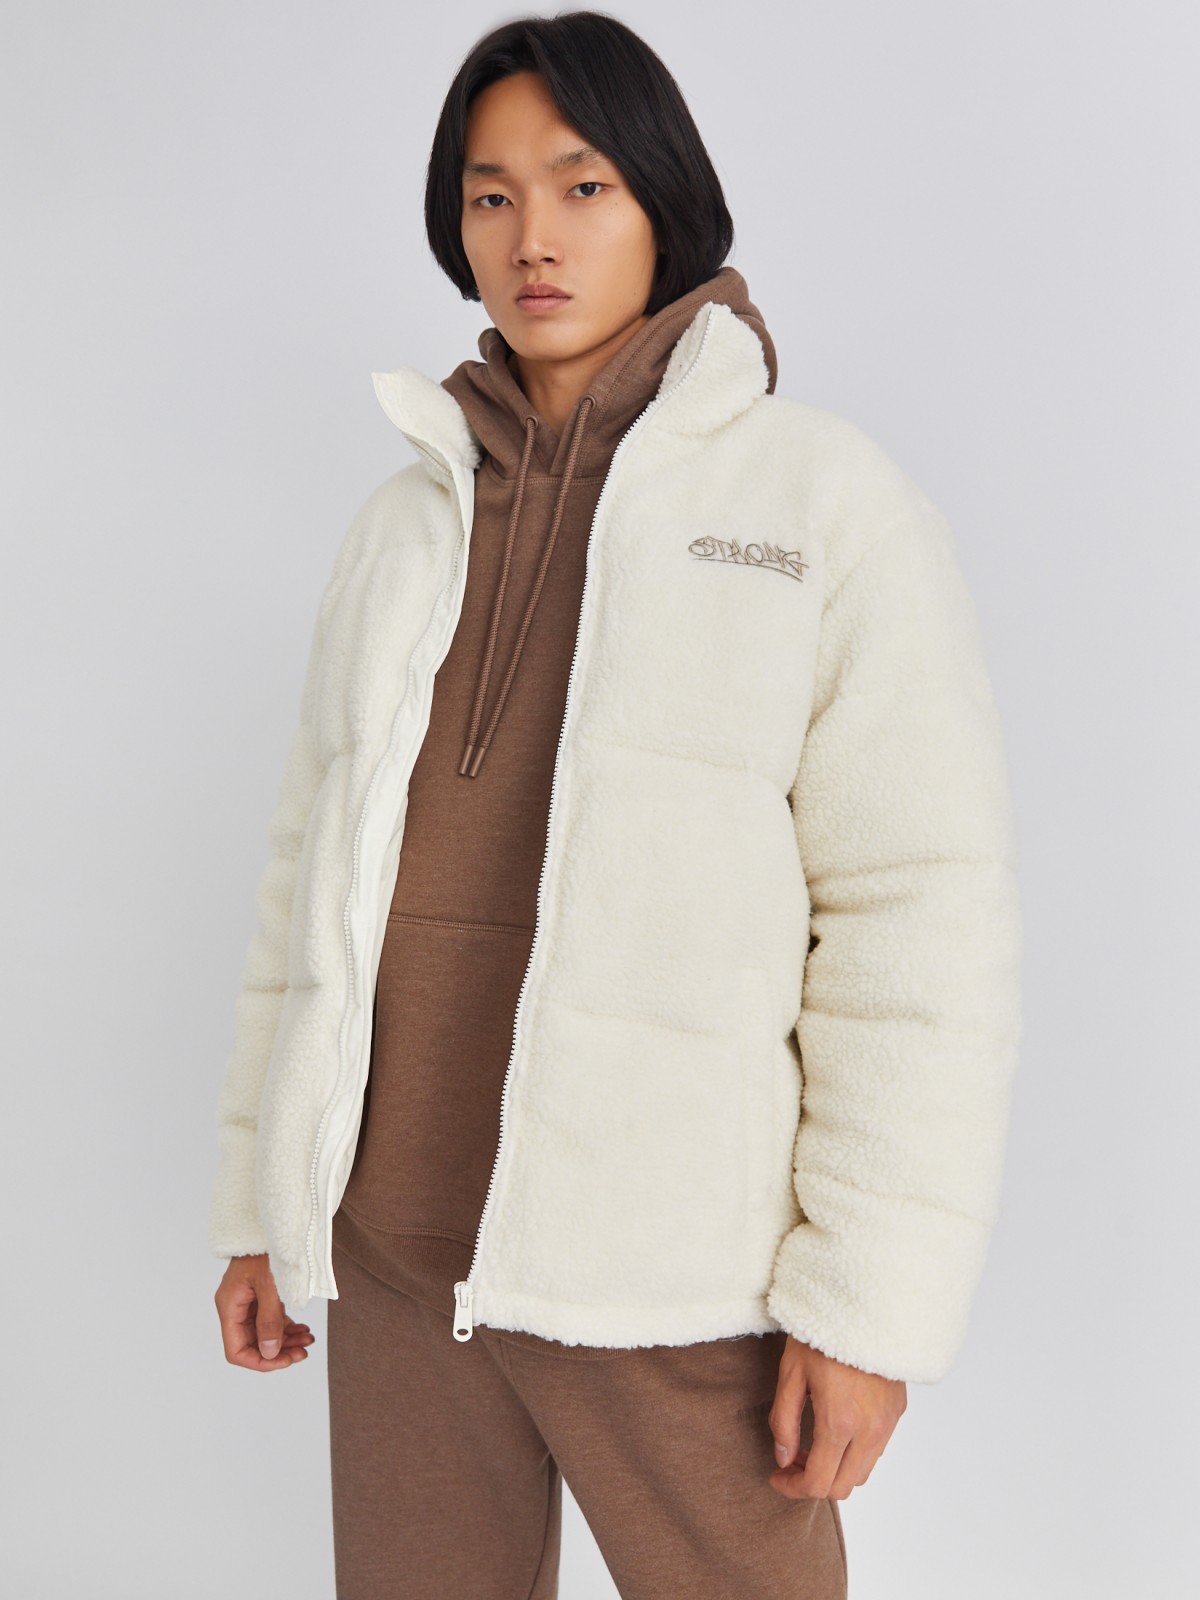 Тёплая куртка из экомеха с воротником-стойкой zolla 013425502024, цвет молоко, размер S/M - фото 1